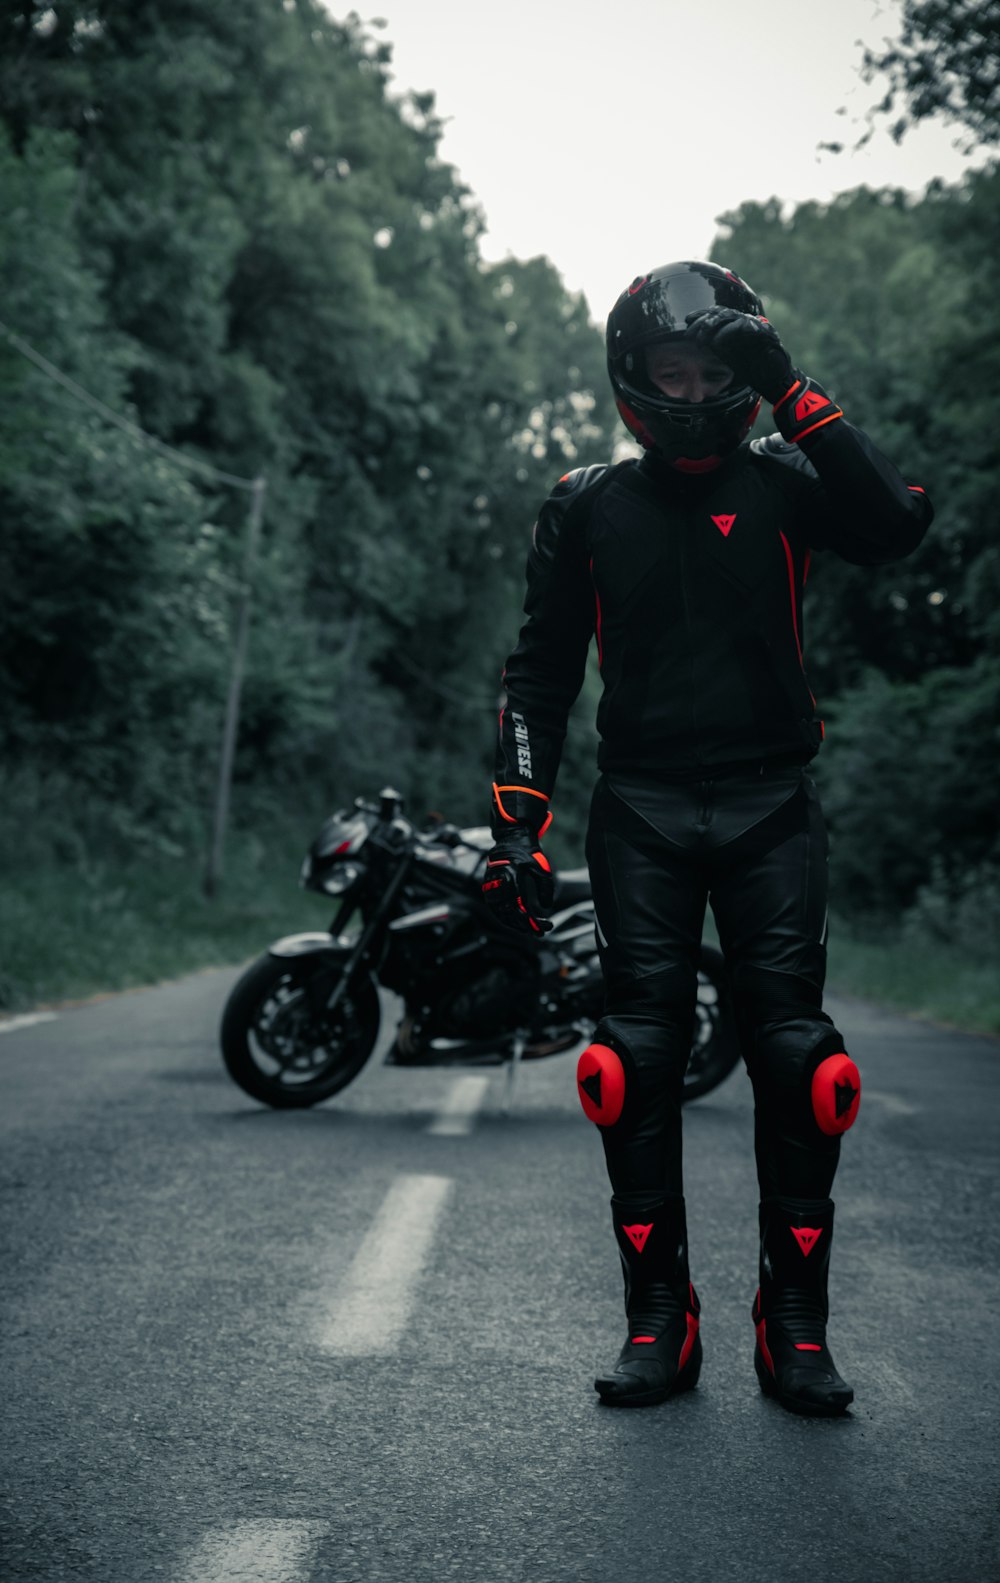 Mann in schwarzer Jacke und schwarzer Hose fährt schwarzes Motorrad